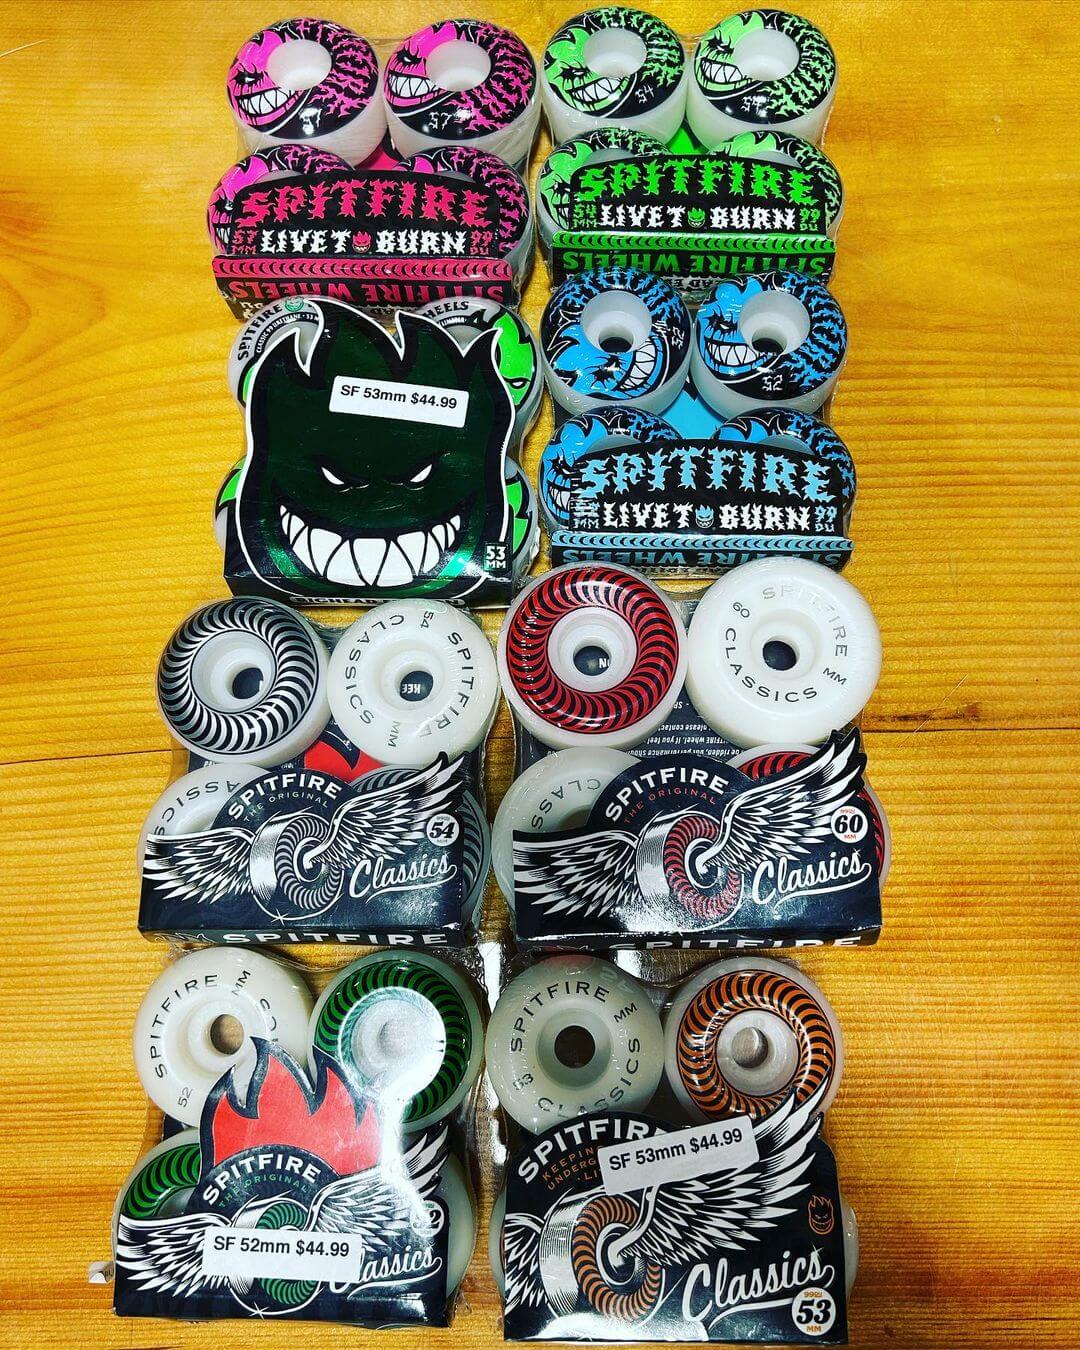 Spitfire skateboard wheels